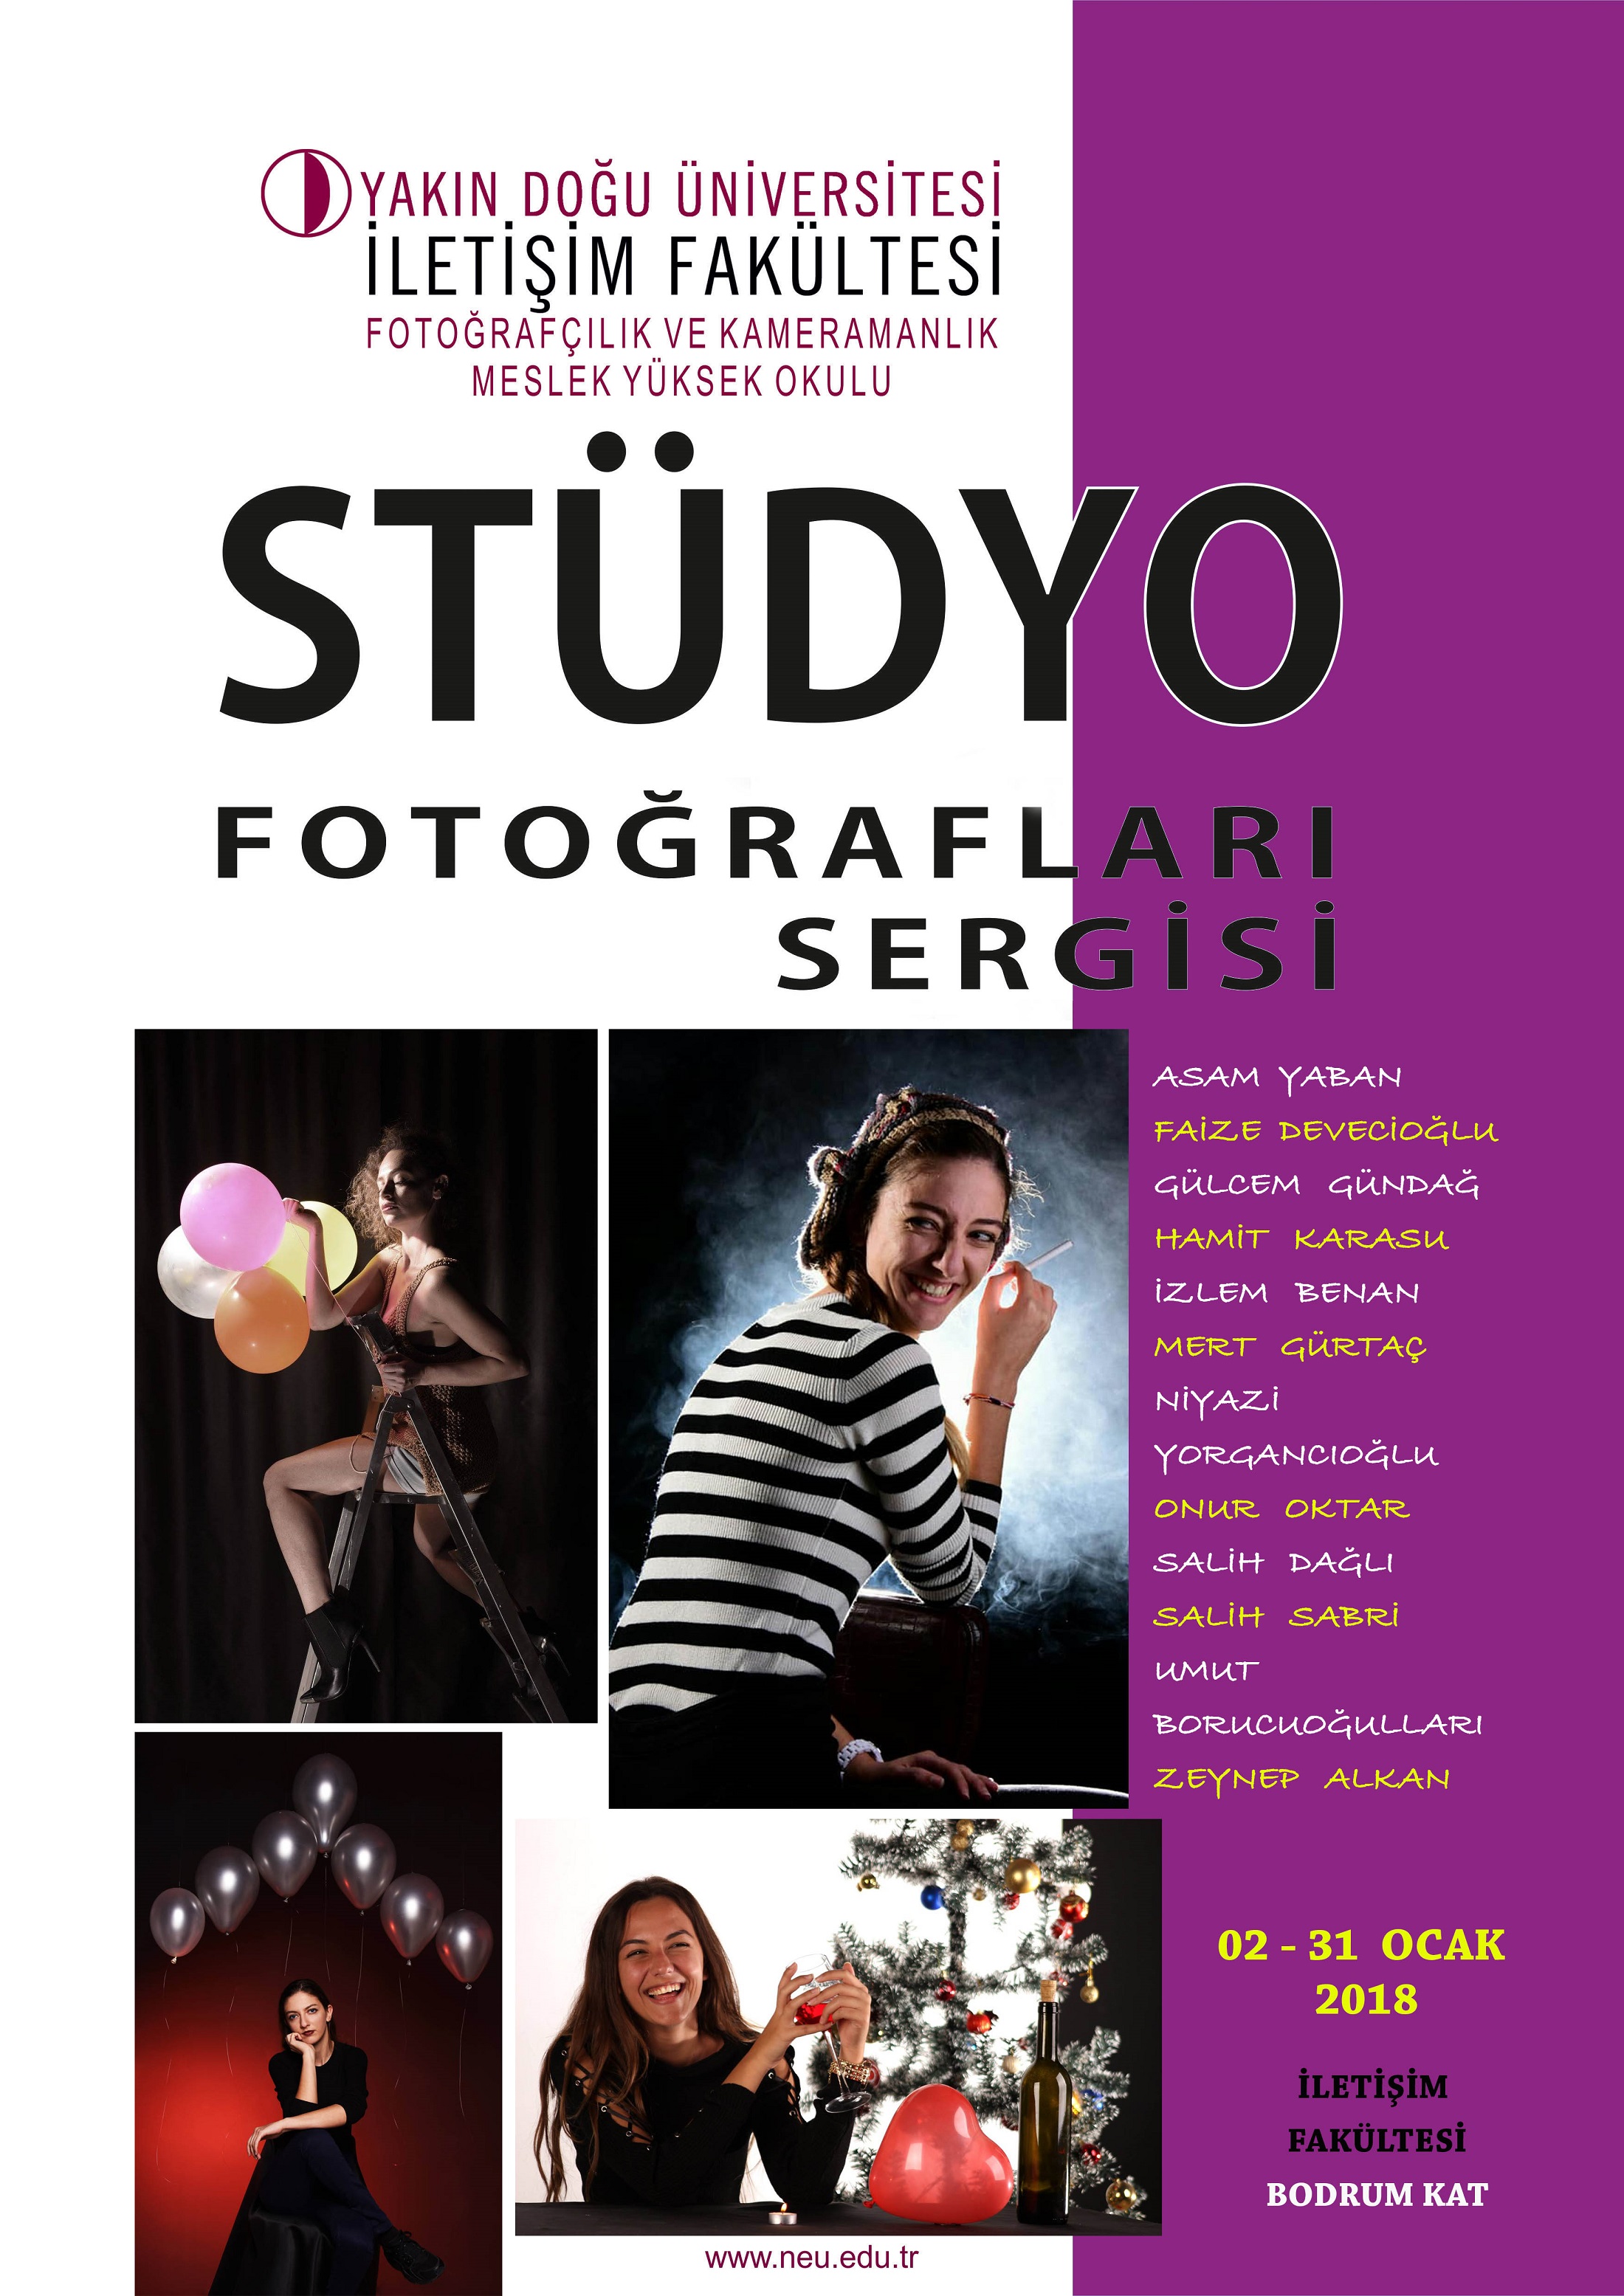 Yakın Doğu Üniversitesi Stüdyo Fotoğrafları Sergisi, 2 Ocak’ta Açılıyor